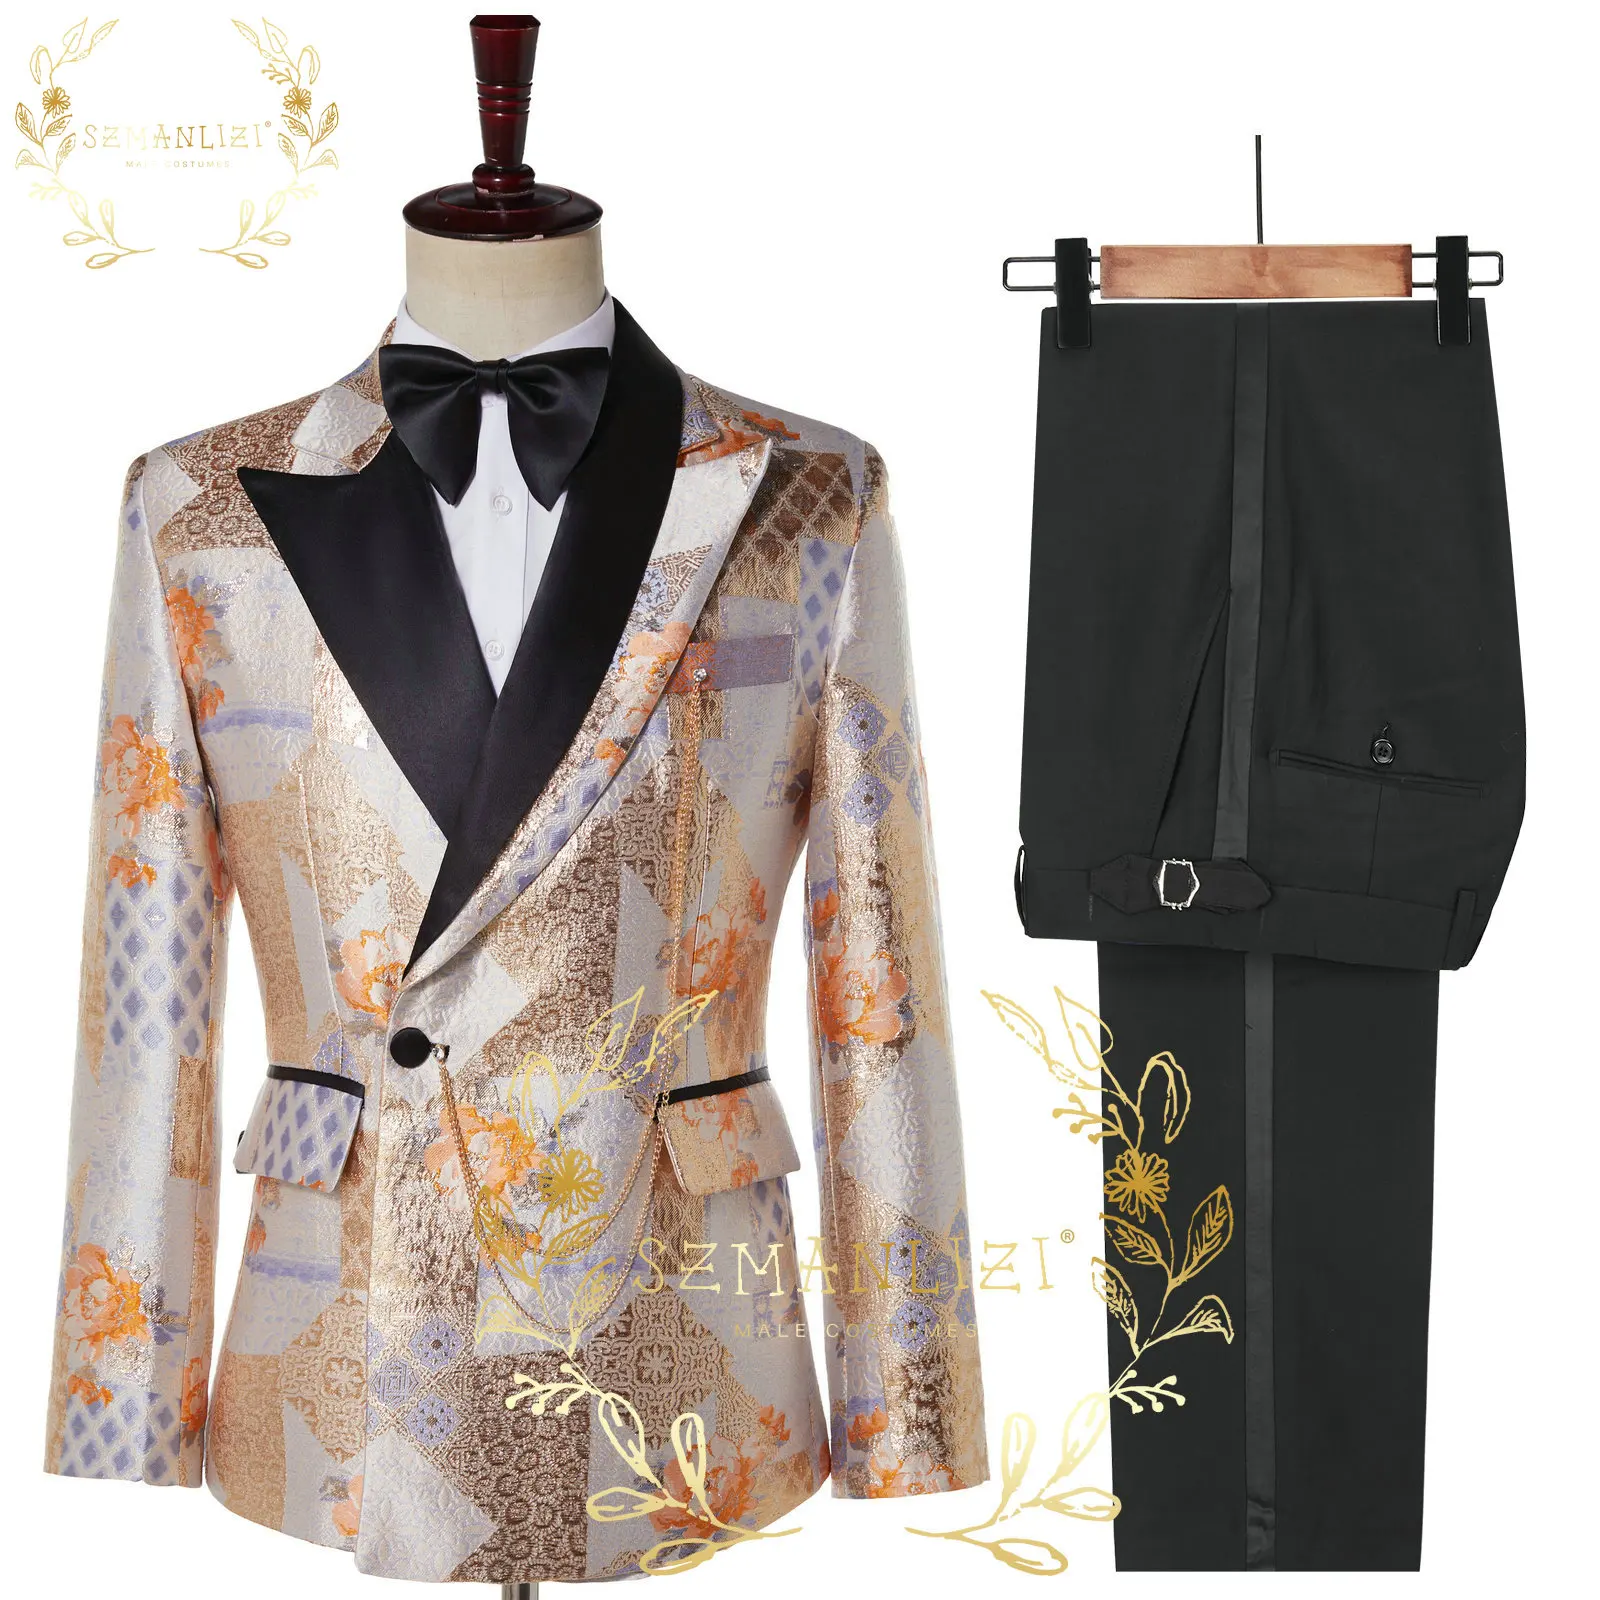 

Boutique (Blazer + Trousers) Men's Fashion Business Jacquard Elegant Slim Gentleman Wedding Casual Formal Suit 2-piece Set